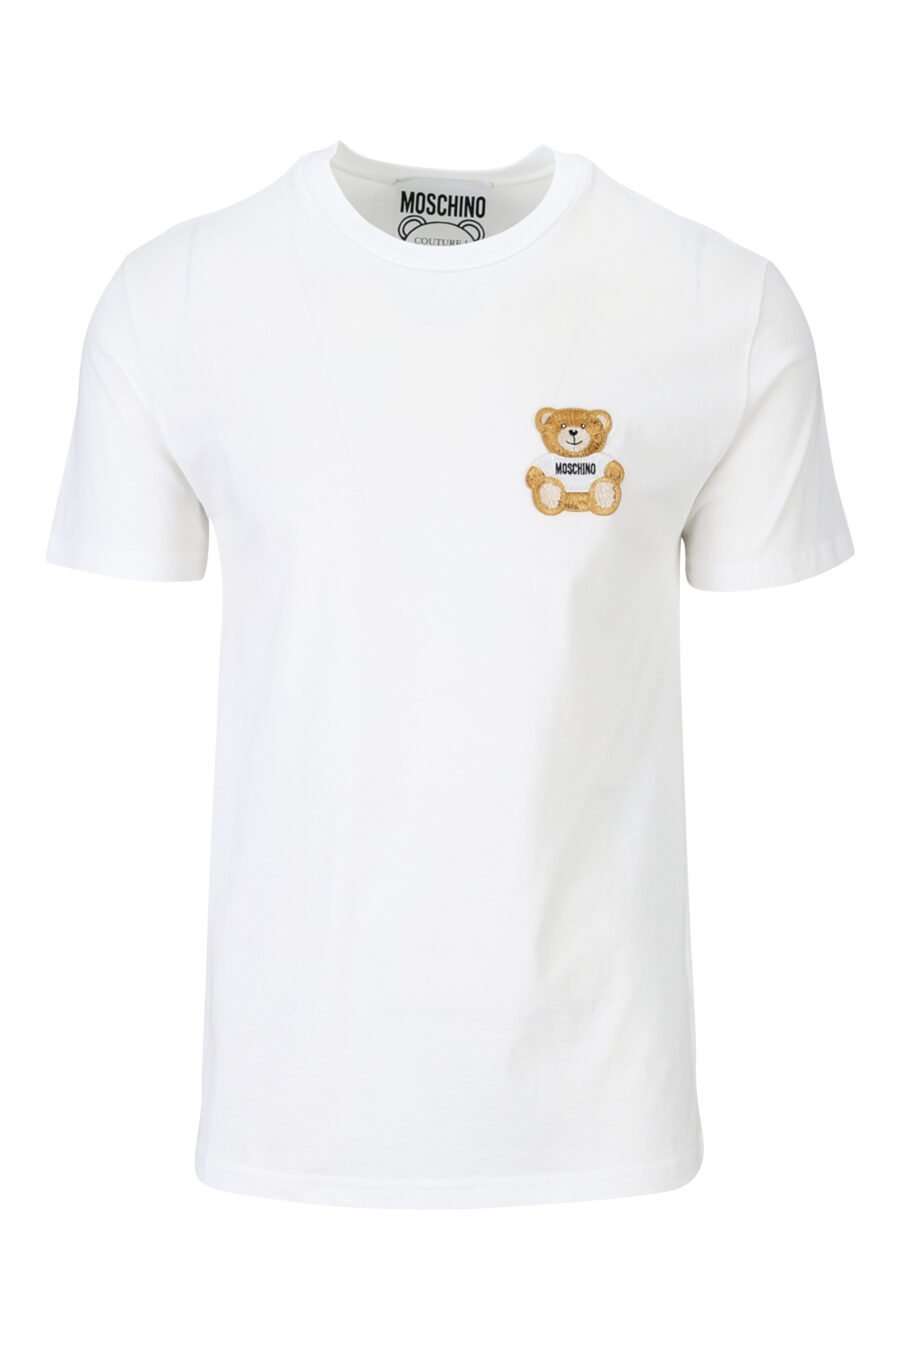 Weißes Öko-T-Shirt mit Bärchen-Mini-Logo - 889316725384